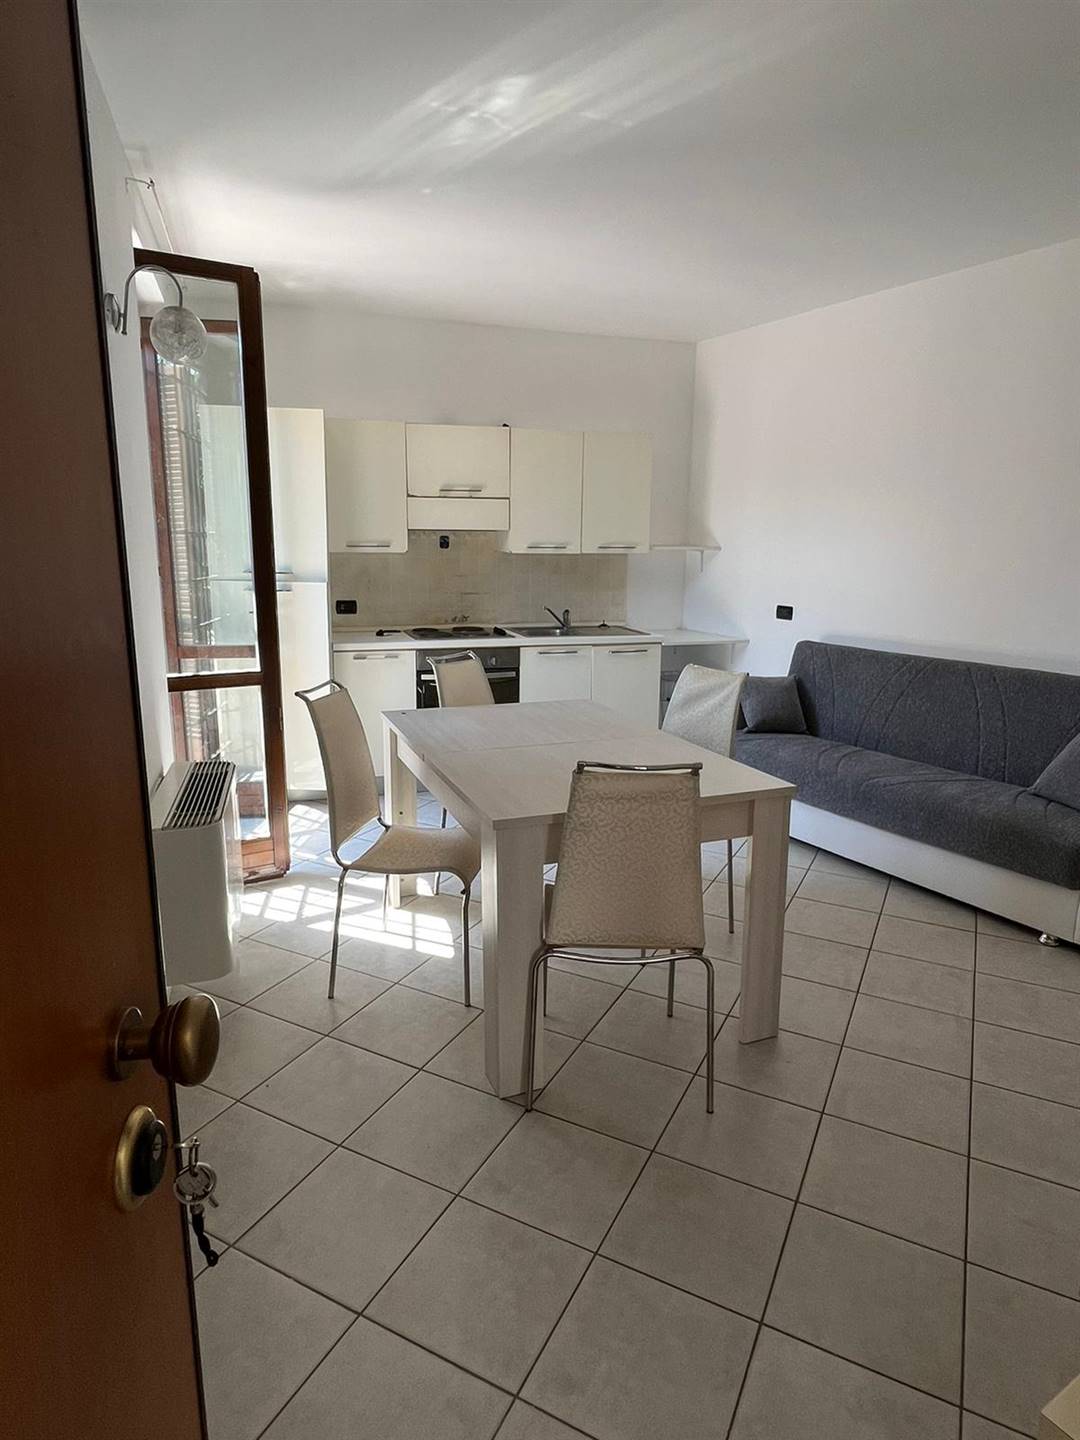 Appartamento in vendita a Gadesco-Pieve Delmona, 3 locali, zona le San Marino, prezzo € 90.000 | PortaleAgenzieImmobiliari.it